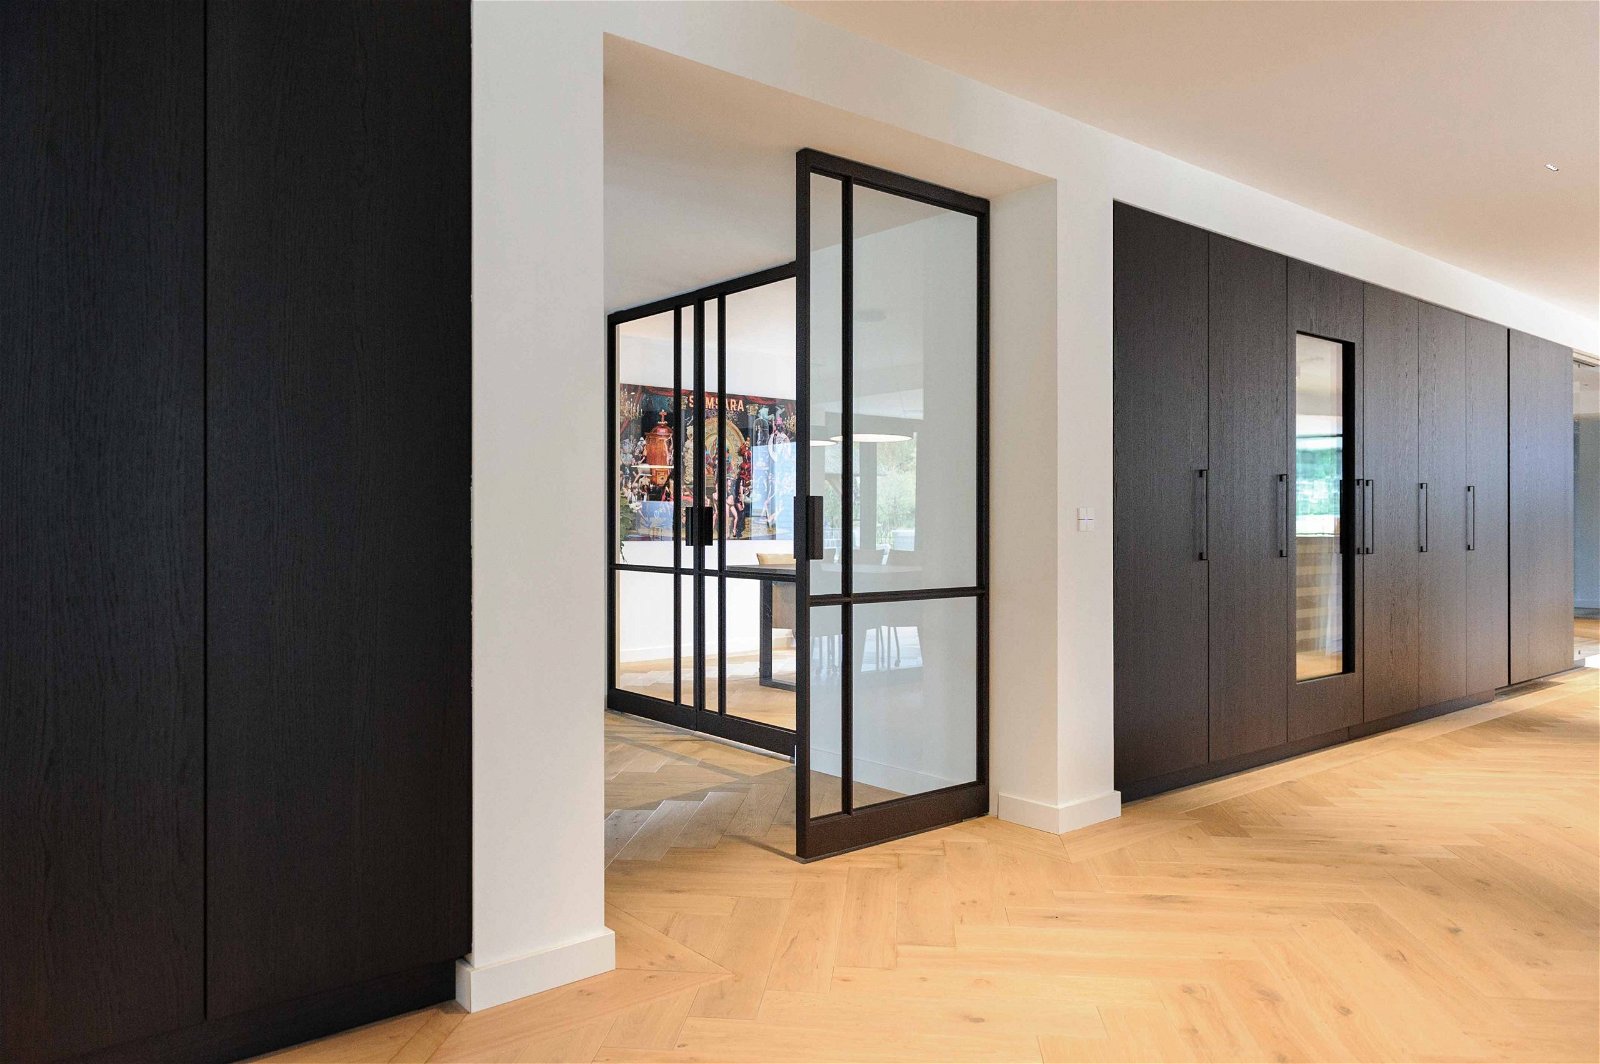 Multiple glass and steel pivot doors designed by Preferro - FritsJurgens pivot hinges Inside.